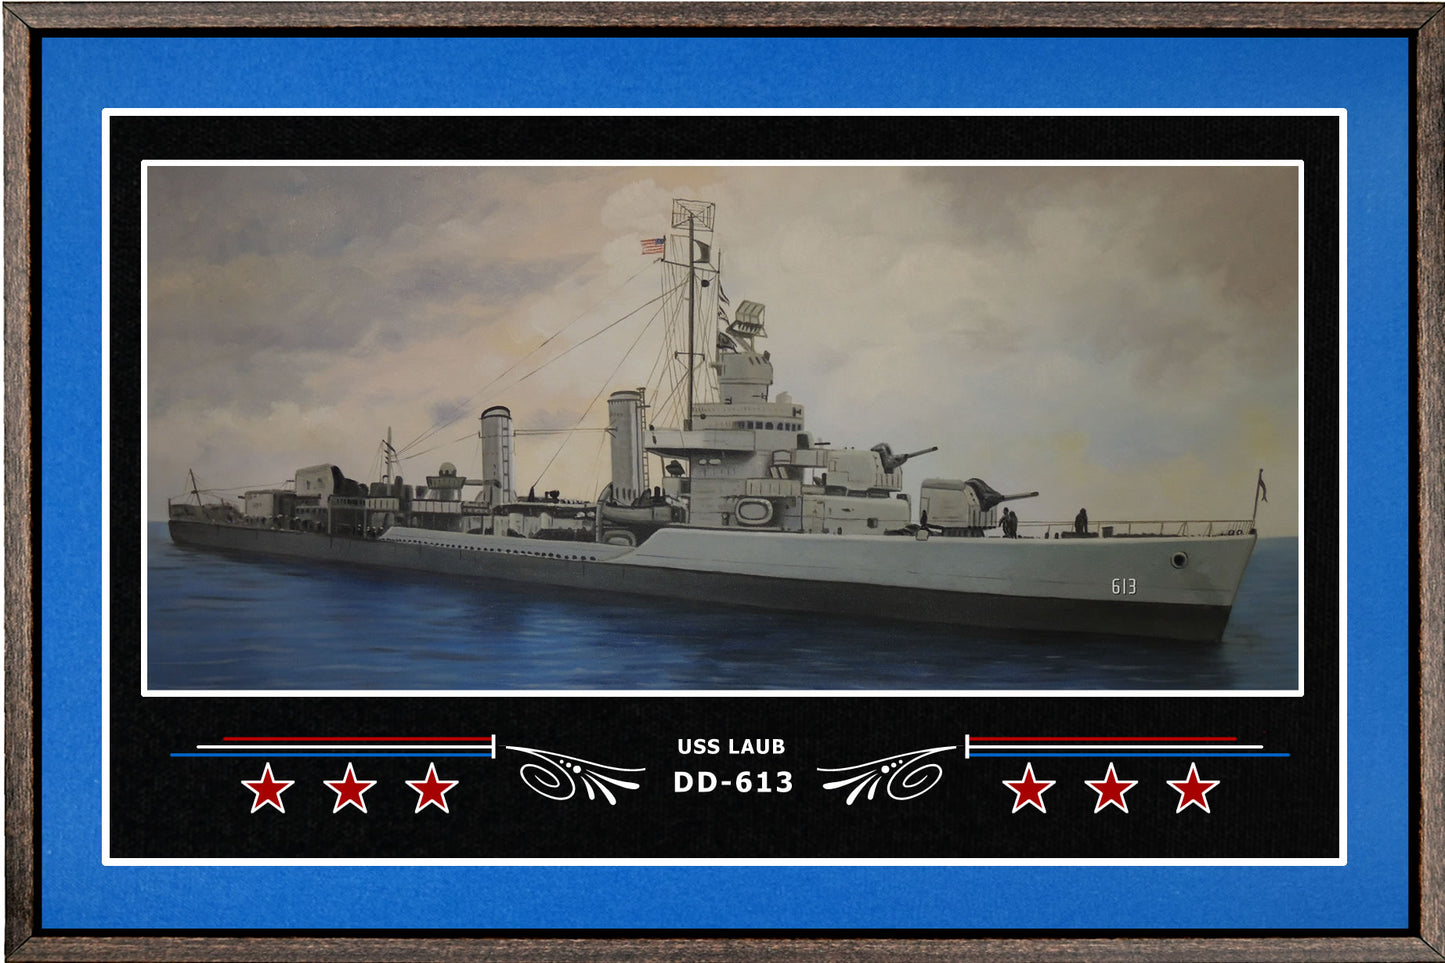 USS LAUB DD 613 BOX FRAMED CANVAS ART BLUE